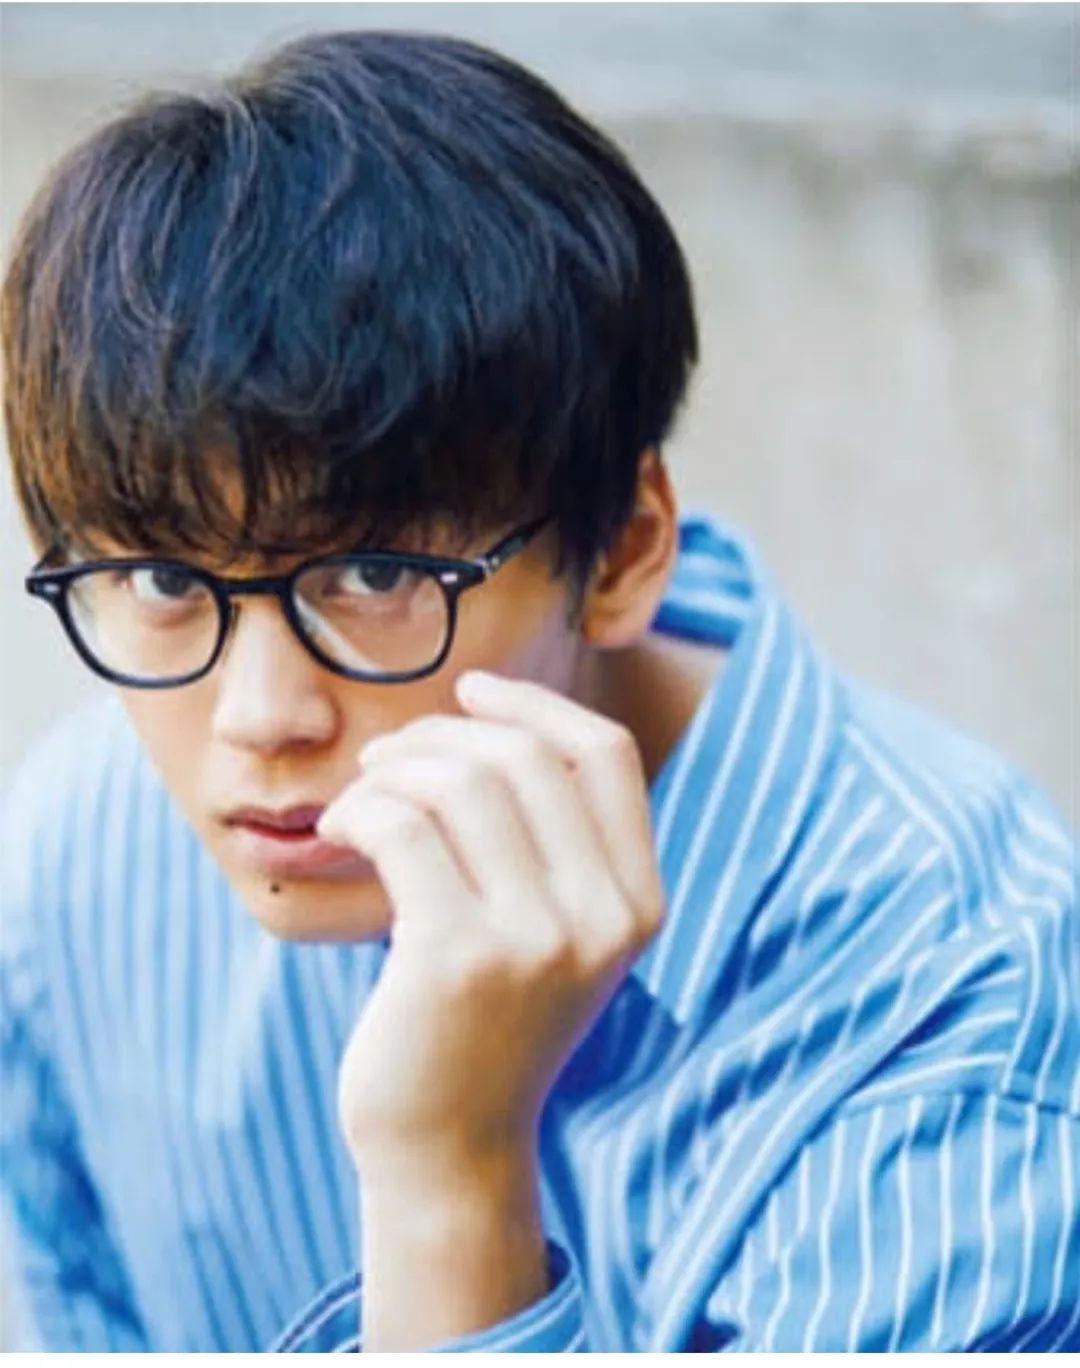 韩国眼镜品牌ASHCROFT，优雅的英伦风格。